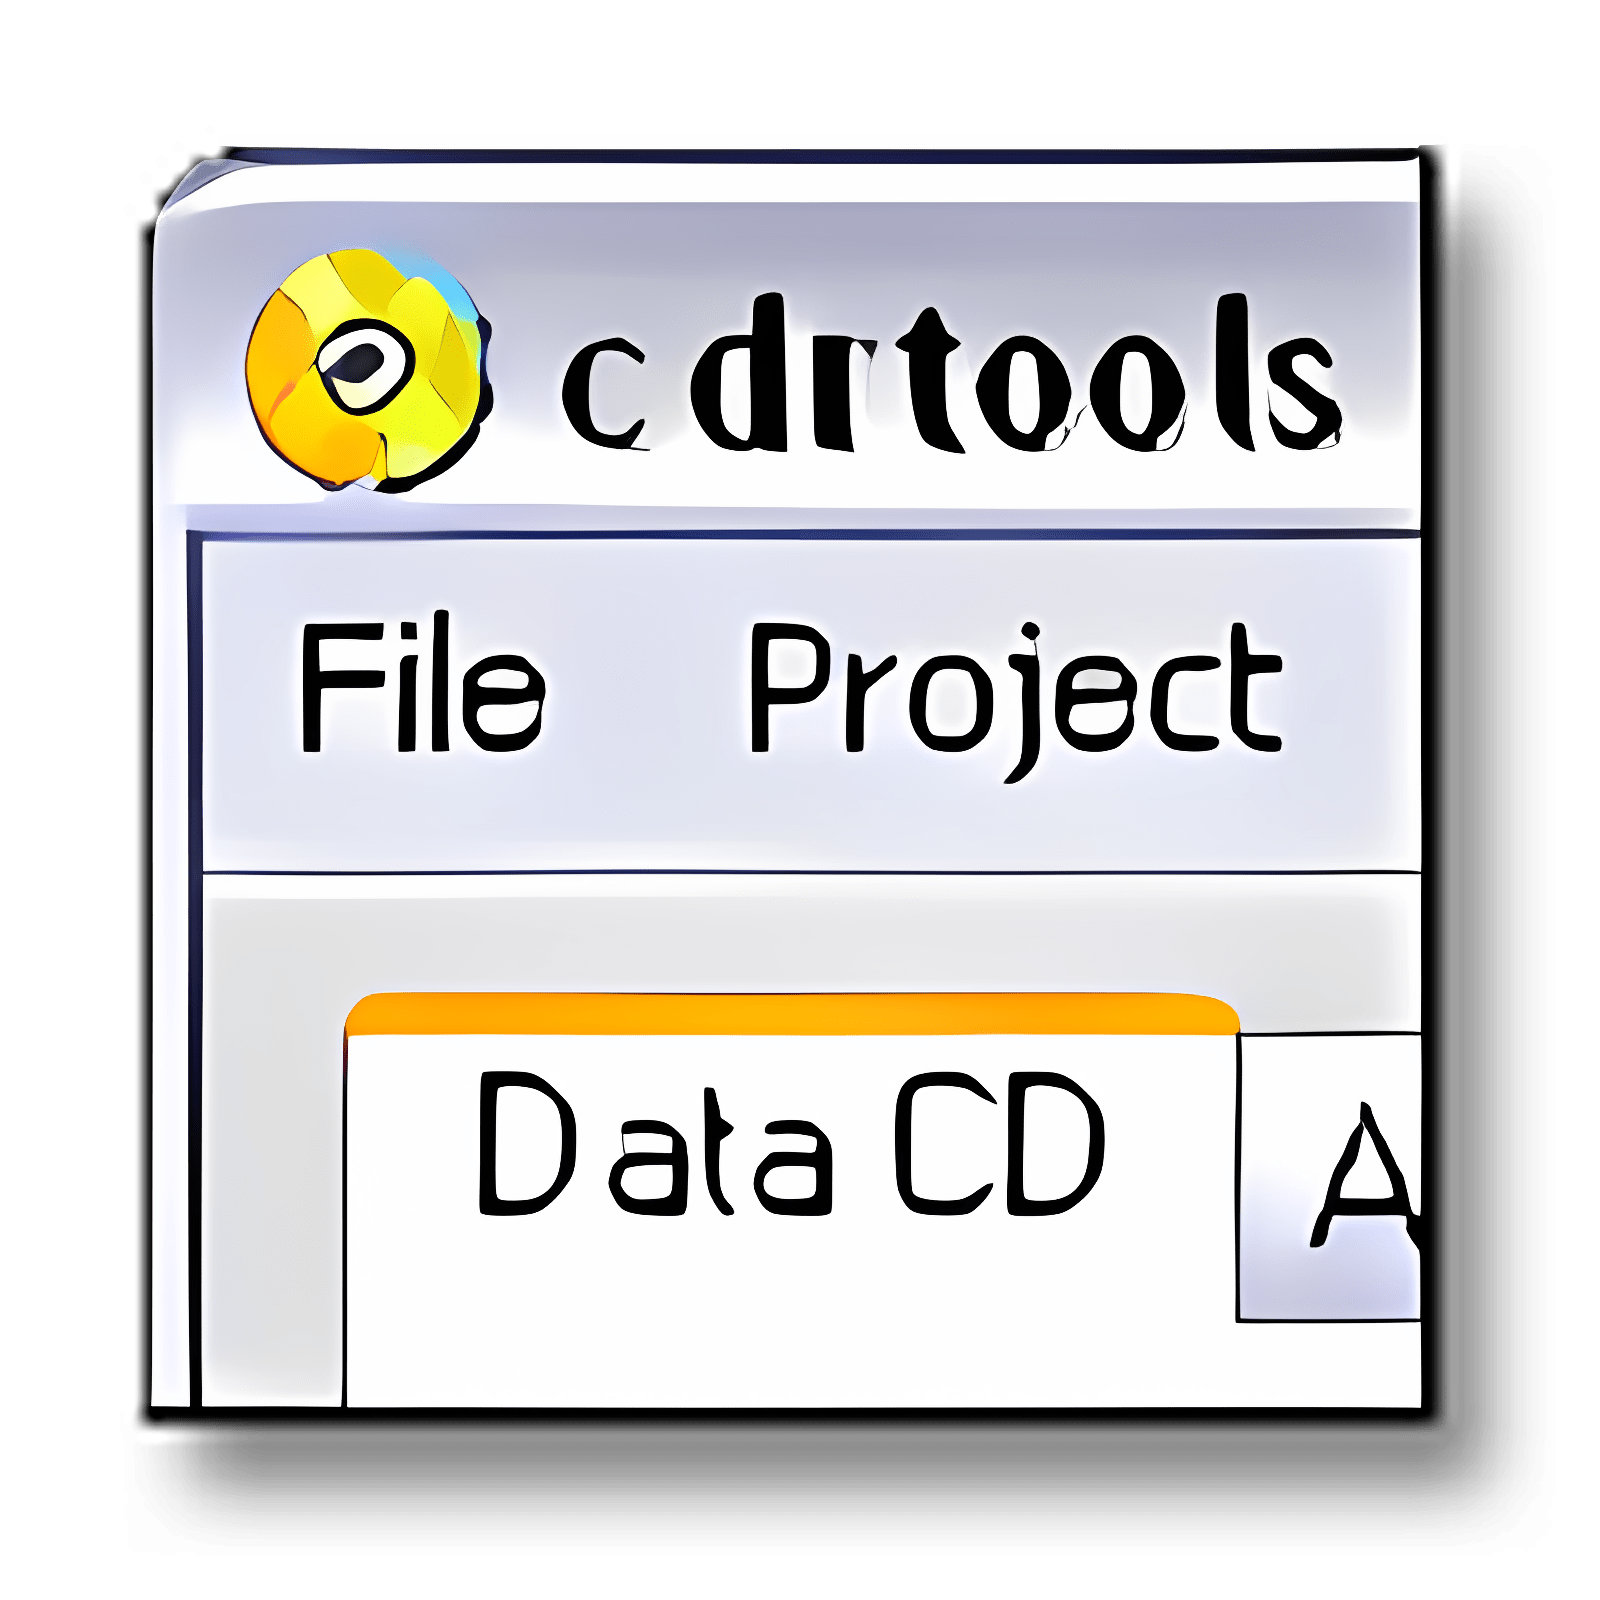 Download Cdrtfe Install Latest App downloader